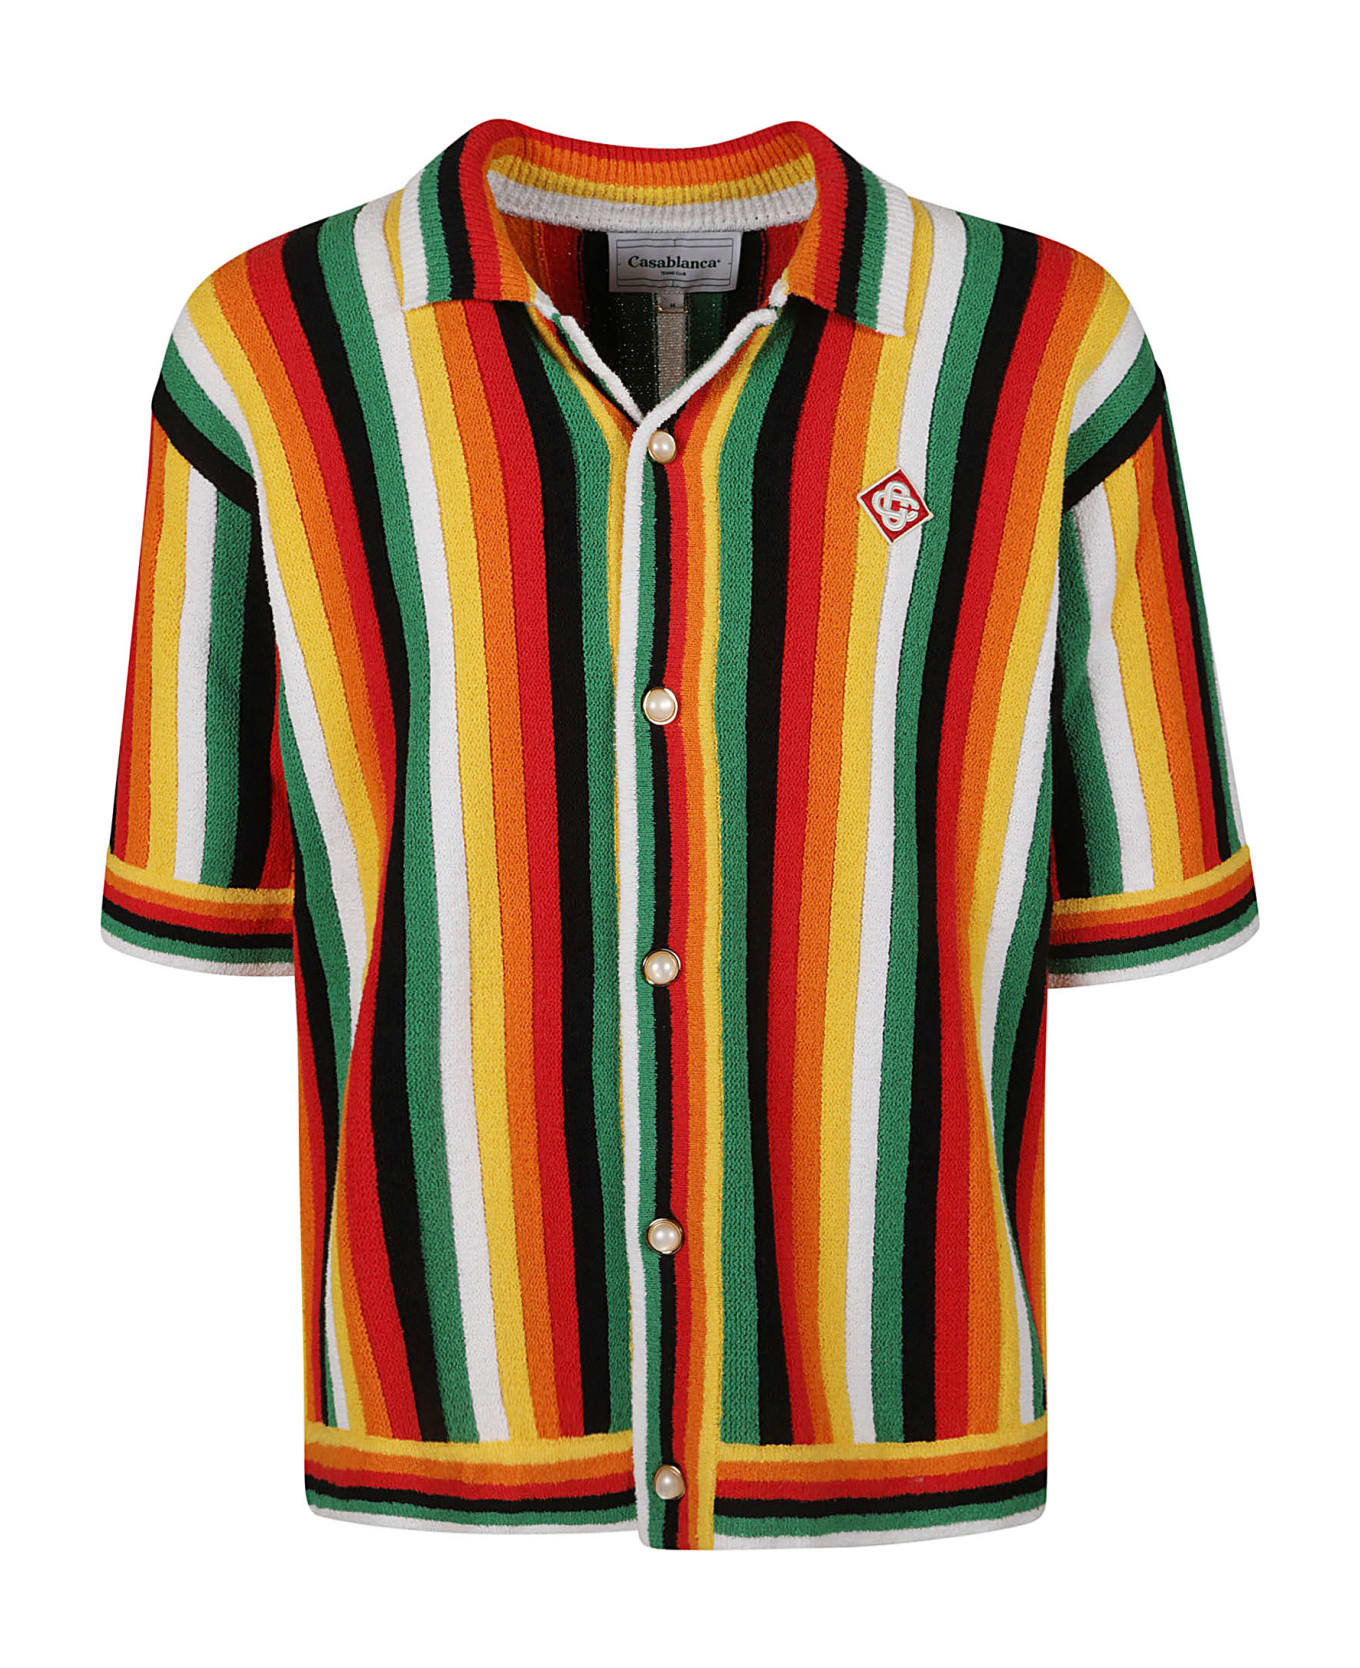 Casablanca Multicolored Terry Shirt - Multicolor